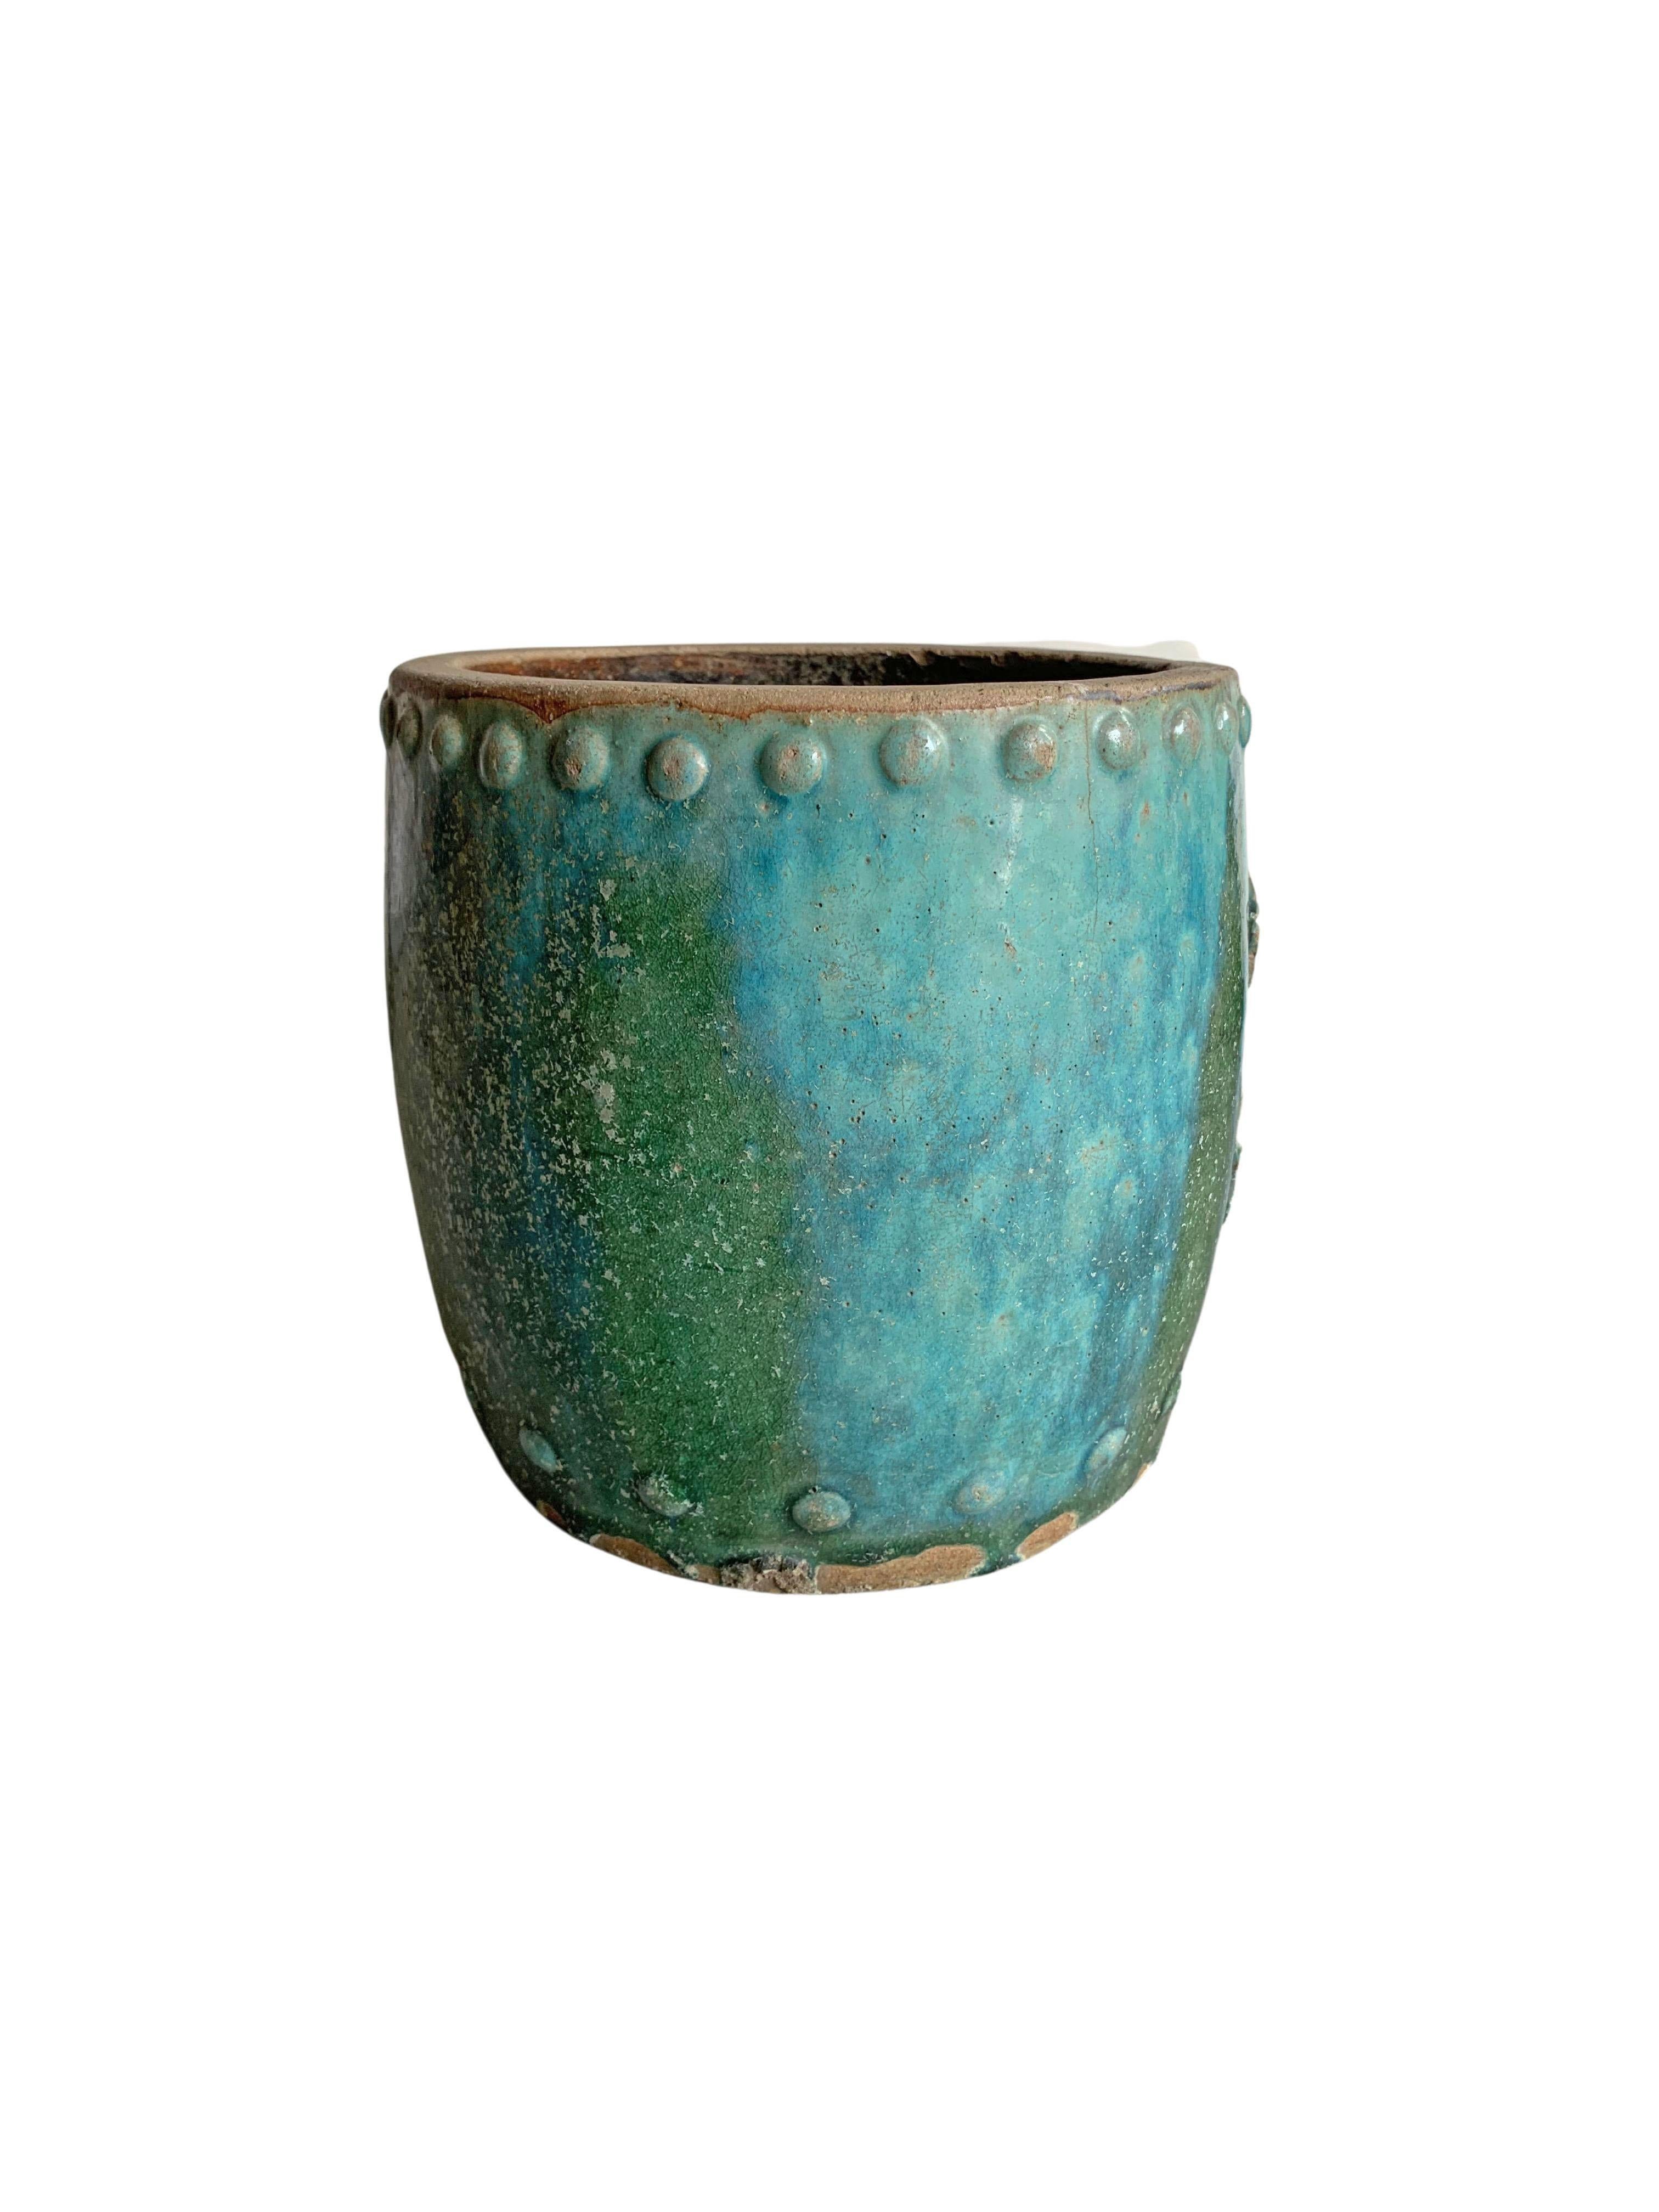 Vernissé Pot de rangement / jardinière en céramique vernissée verte « huile blanche » de Chine, vers 1900 en vente